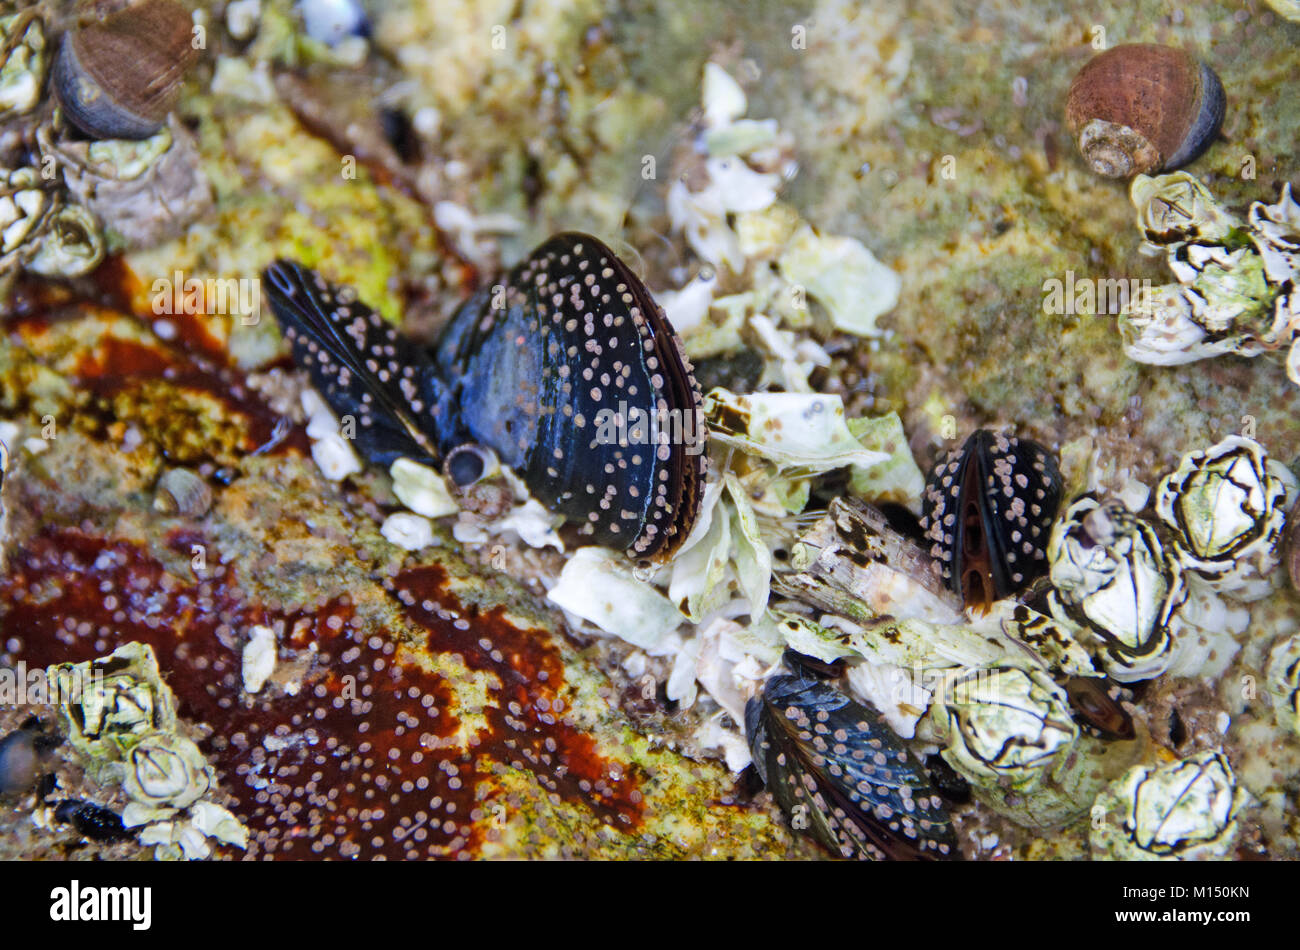 Cyprids (etapa larval de percebe) Configuración de ciclo de vida en mejillones azules (Mytilus edulis) en una piscina de marea en el Gran Jefe, el Parque Nacional de Acadia, Maine Foto de stock